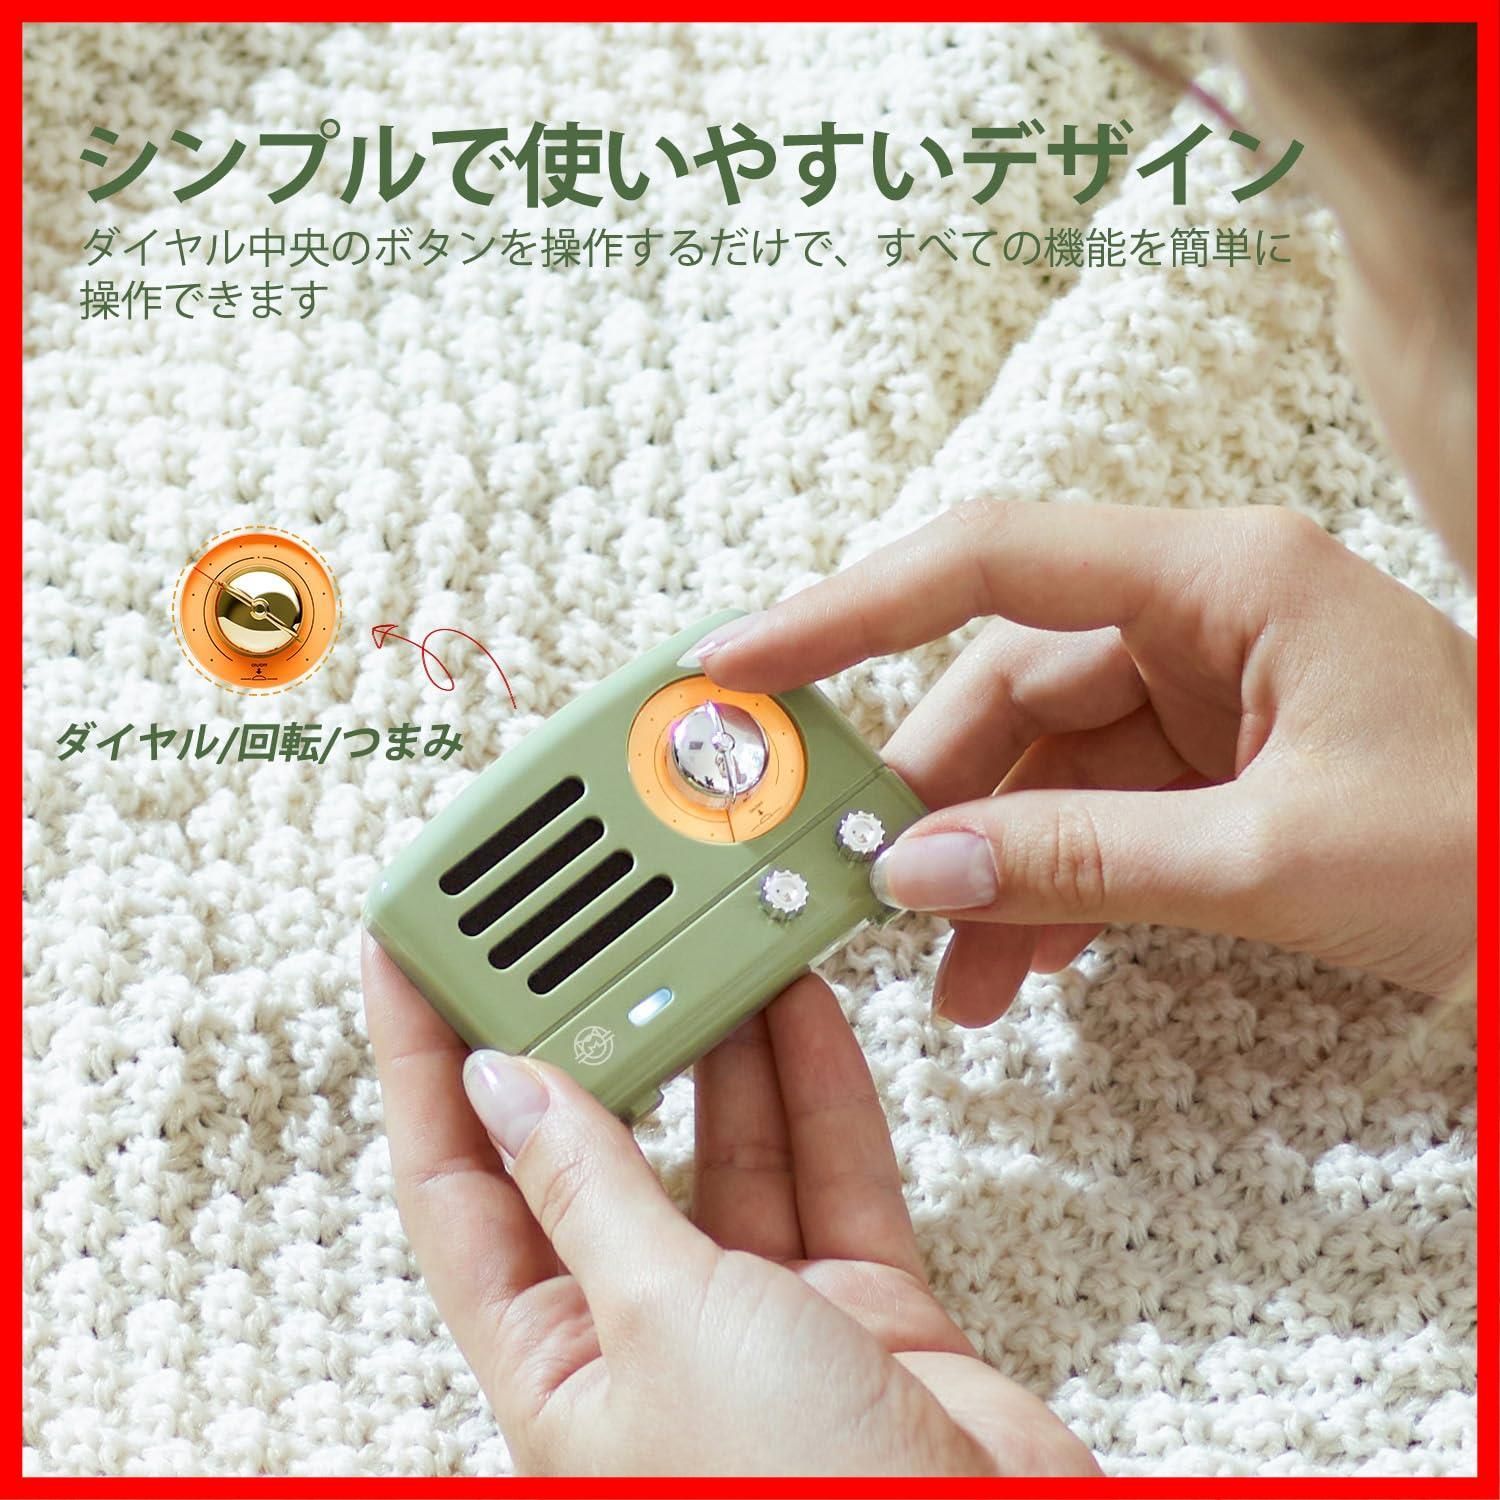 新着商品】MUZEN PETA Bluetoothスピーカー マグネットスピーカー USB C充電/コンパクト/超軽量/ミニかわいい  (オリーブグリーン) - メルカリ